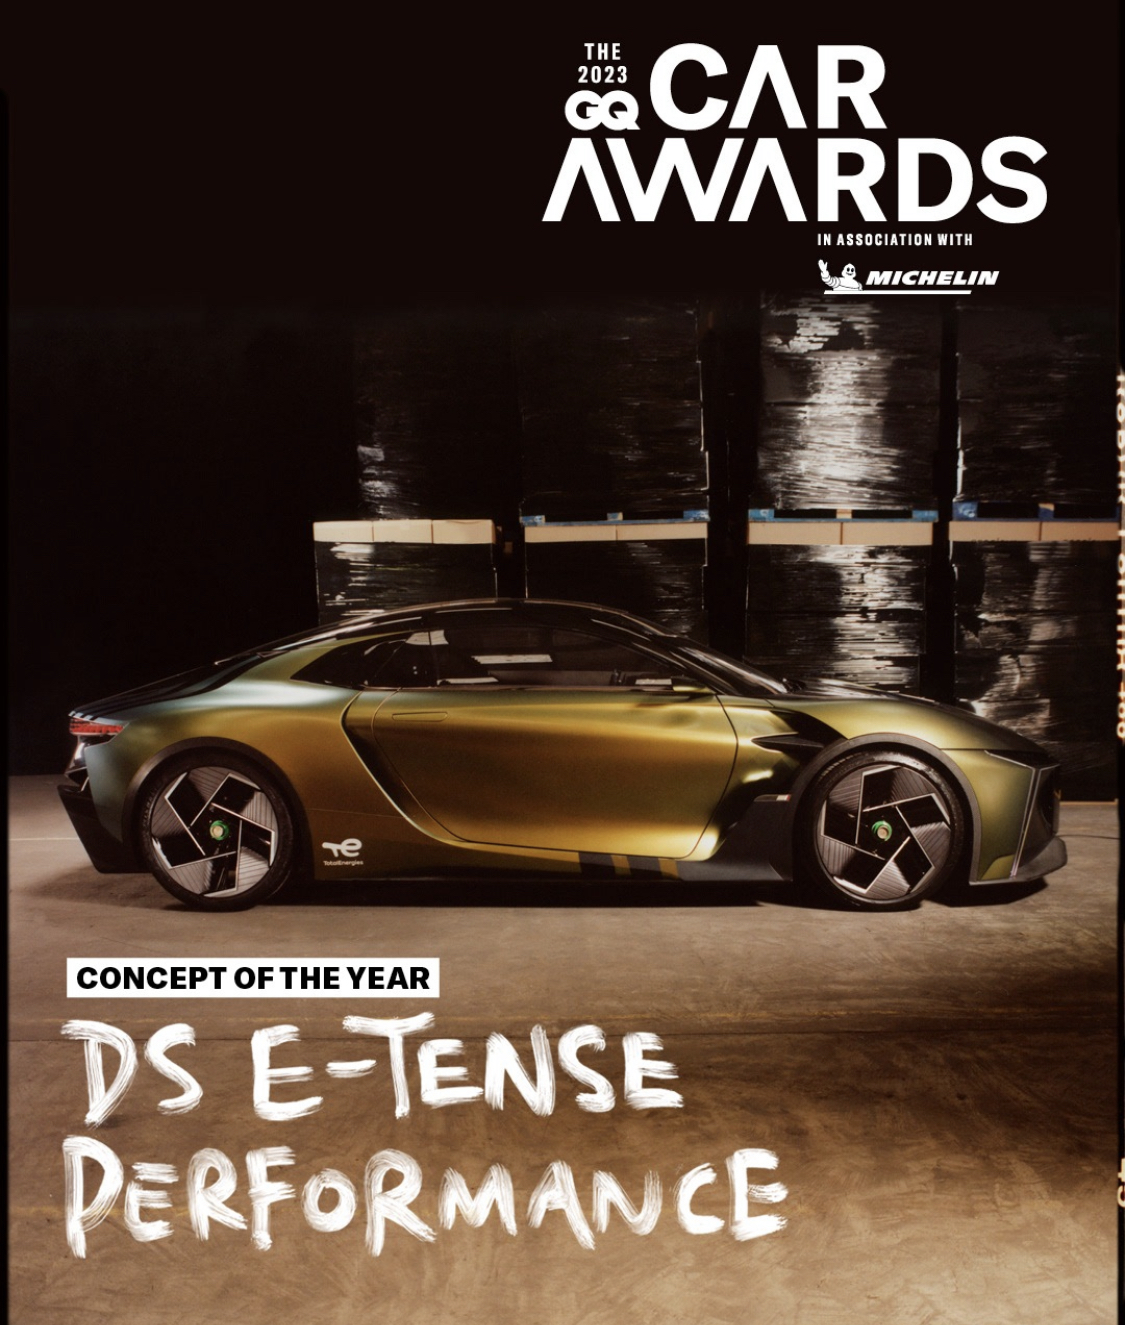 سيارة DS E-TENSE PERFORMANCE الكهربائية تفوز بلقب "فكرة العام" في جوائز السيارات 2023 GQ العالمي